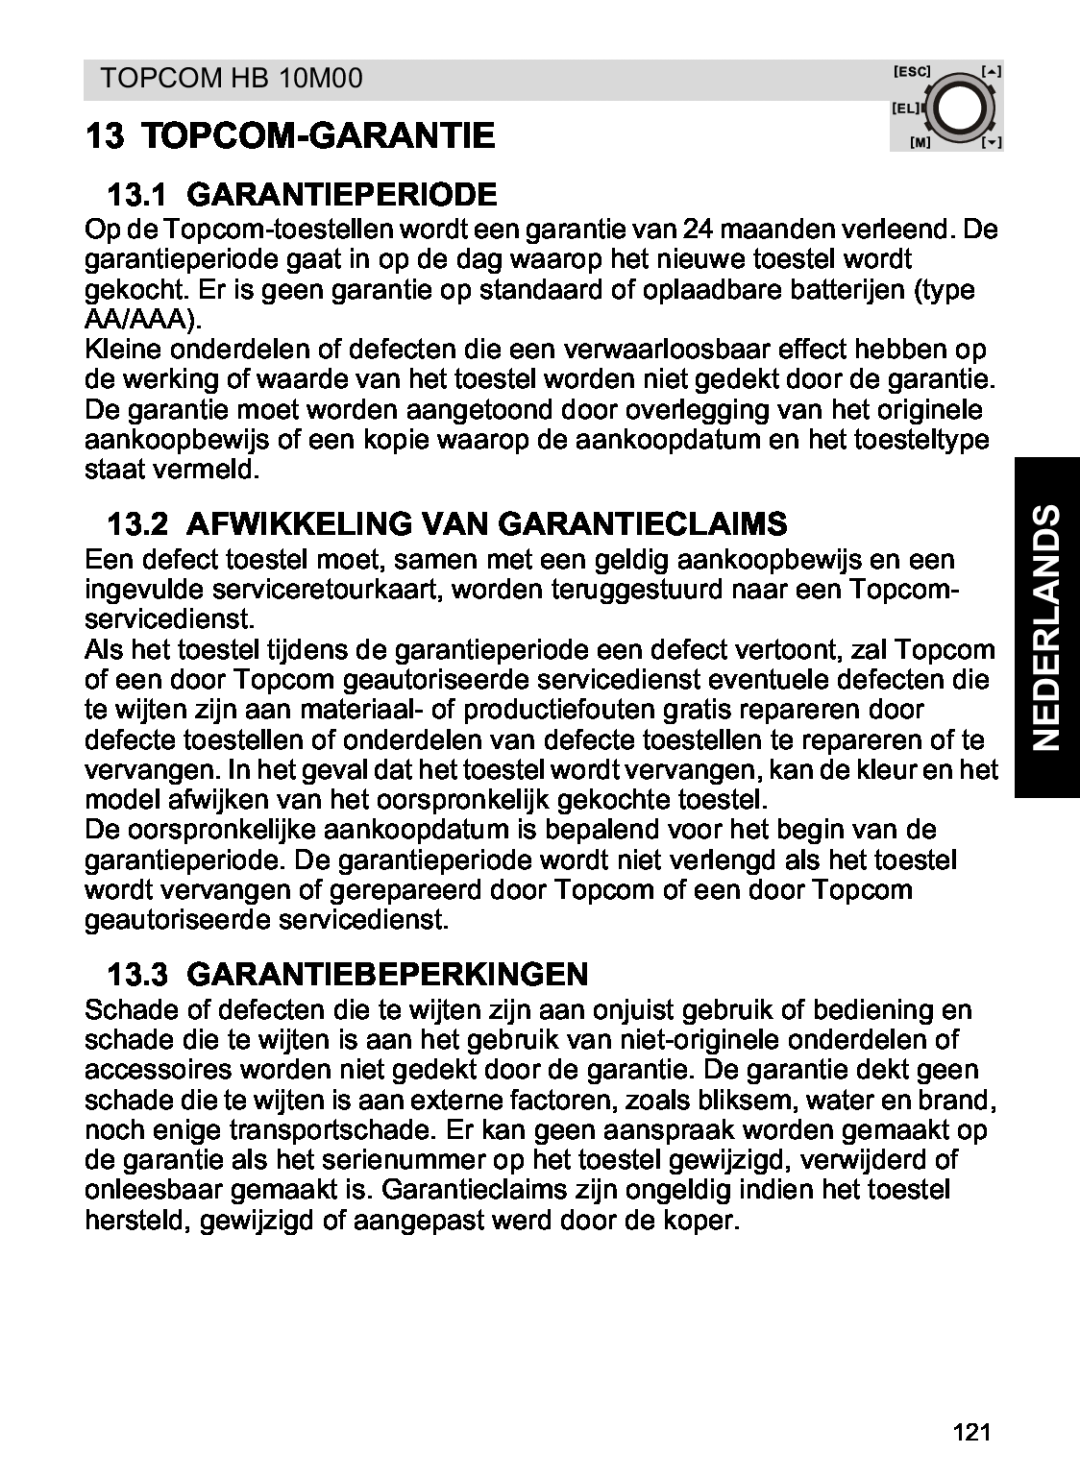 Topcom HB 10M00 manual Topcom-Garantie, Garantieperiode, Afwikkeling Van Garantieclaims, Garantiebeperkingen, Nederlands 